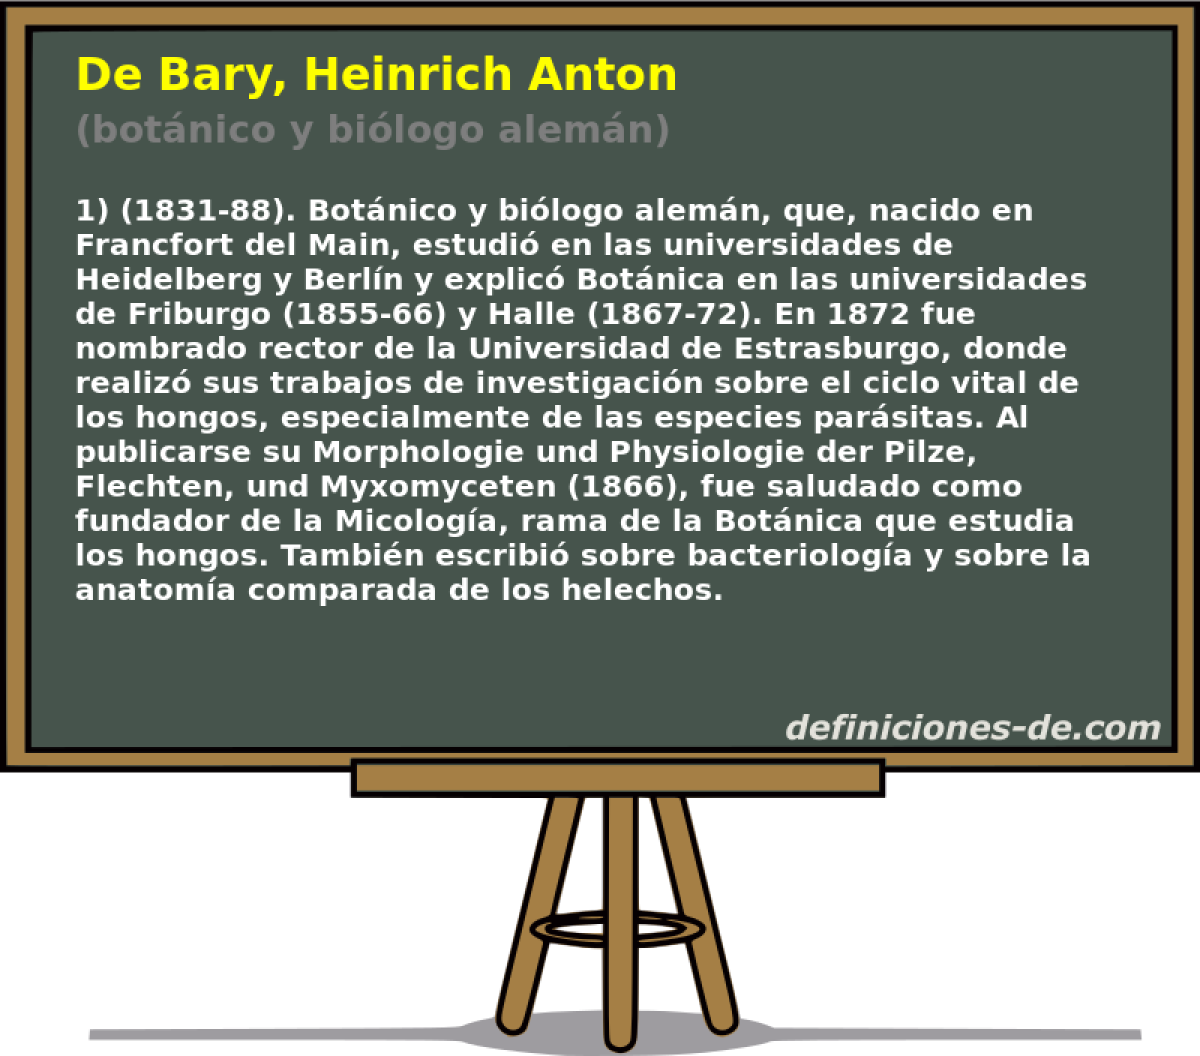 De Bary, Heinrich Anton (botnico y bilogo alemn)